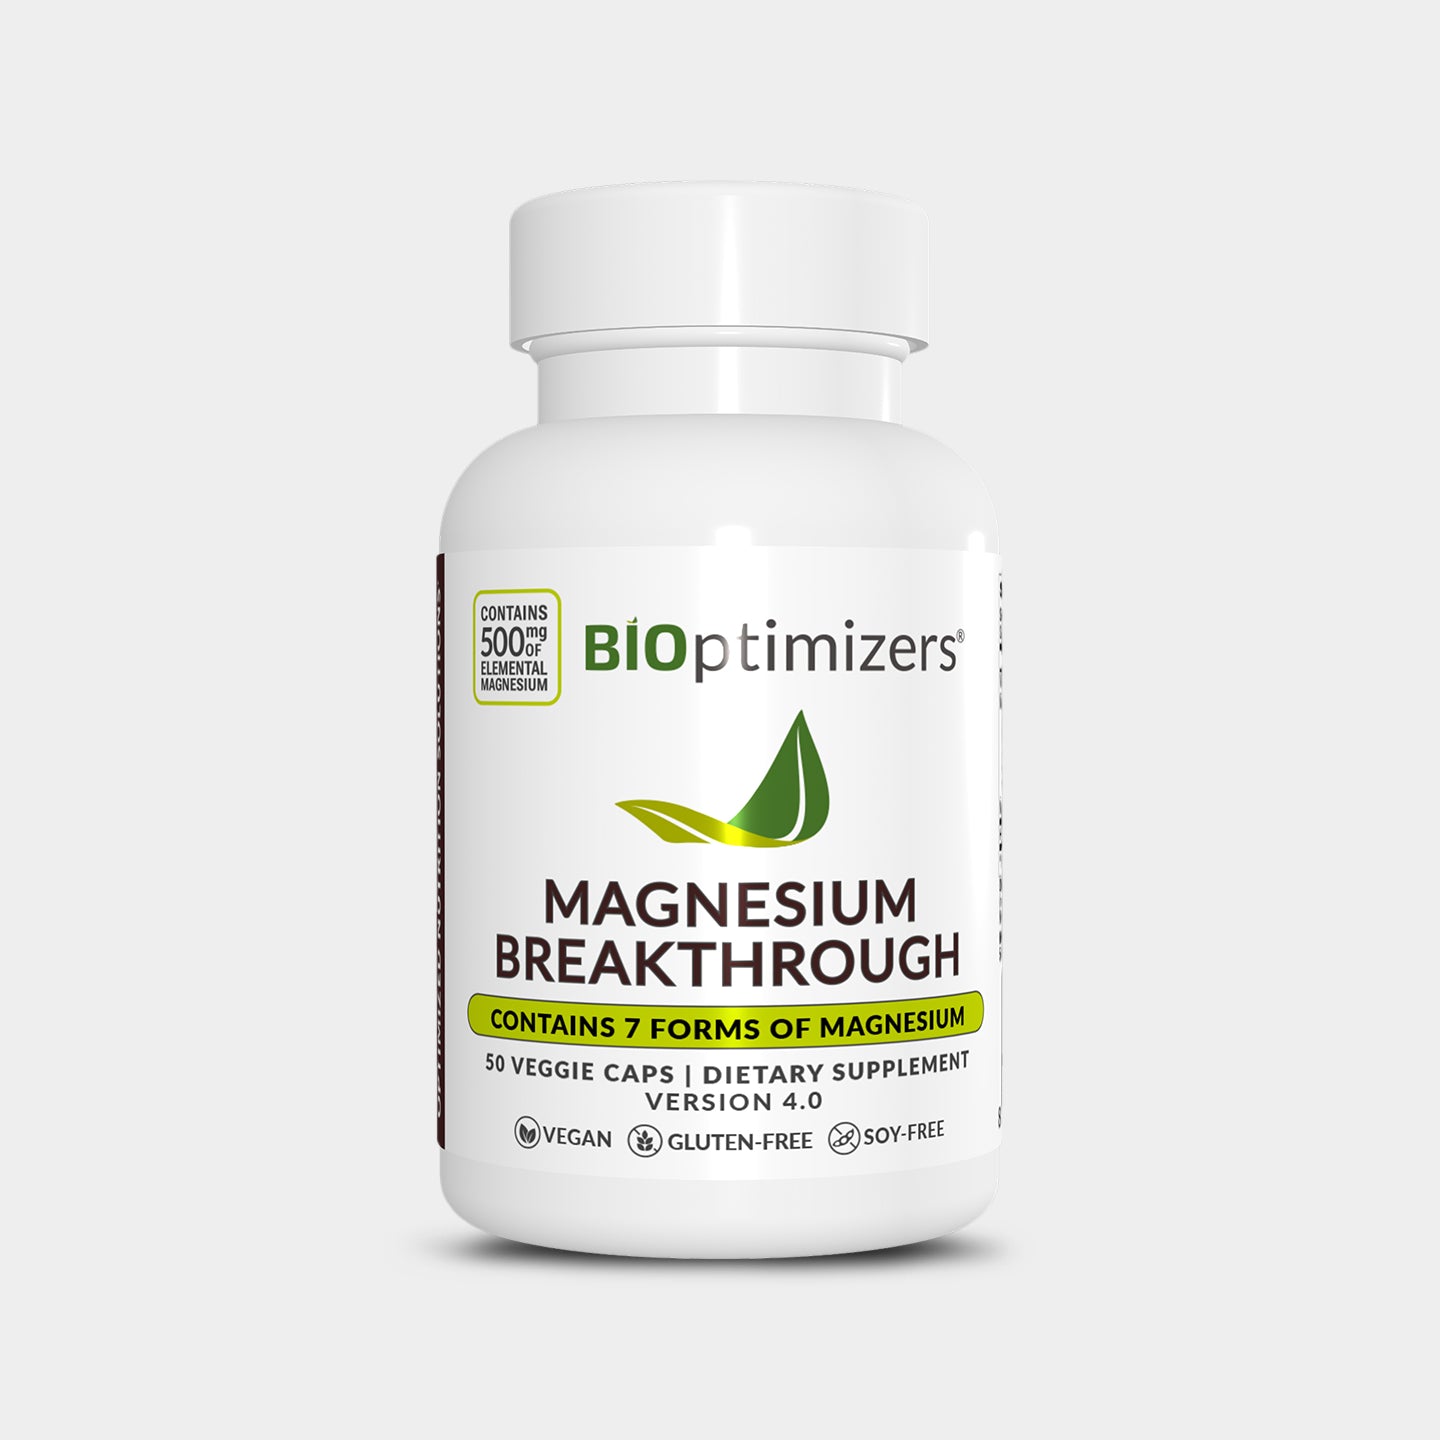 BIOptimizers Magnesium Breakthrough A1